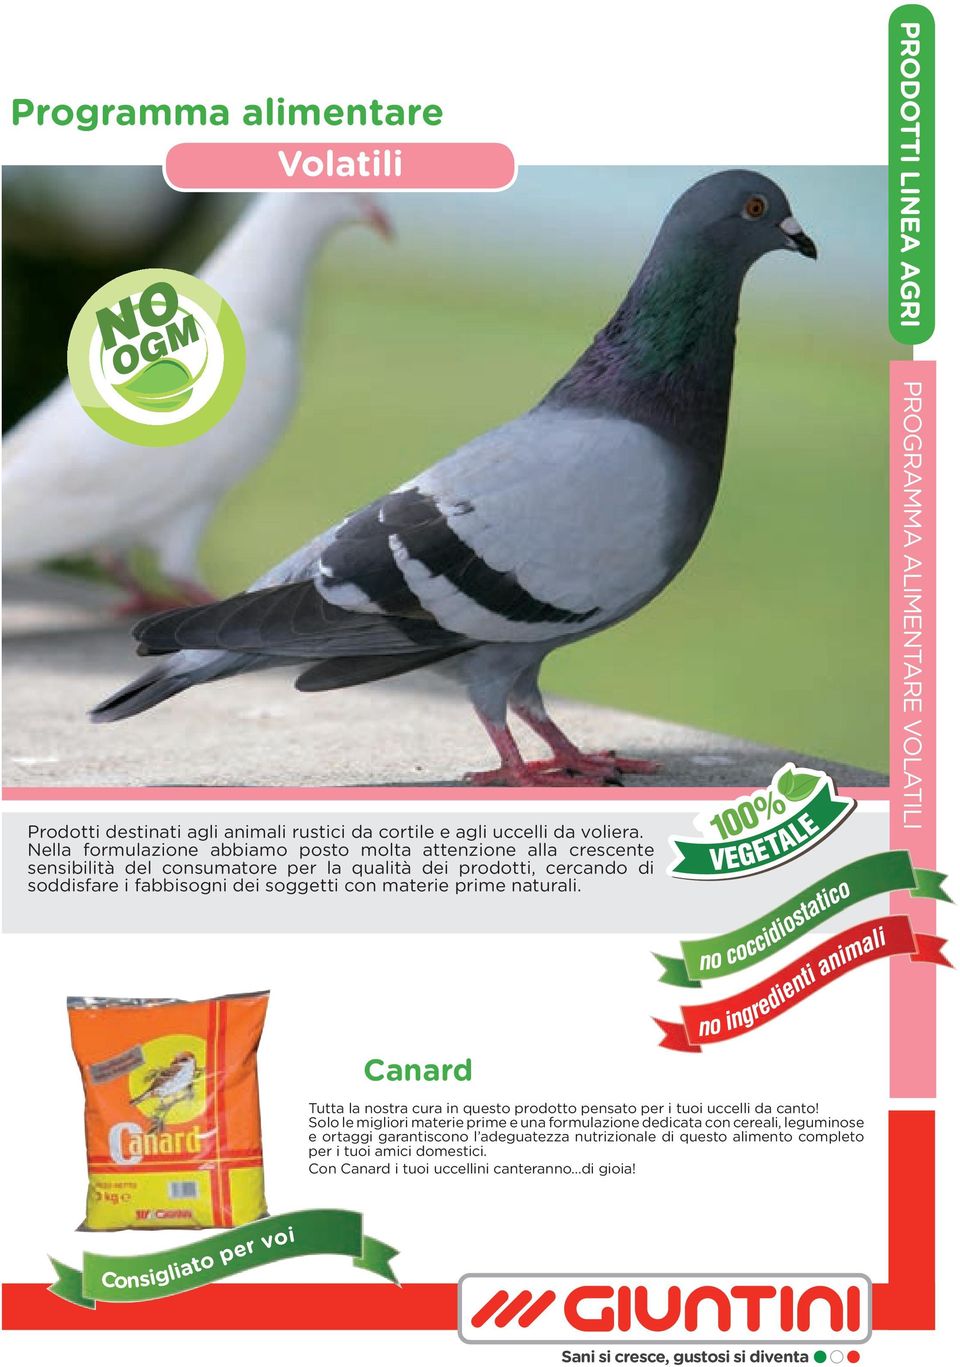 prime naturali. PROGRAMMA ALIMENTARE VOLATILI Canard Tutta la nostra cura in questo prodotto pensato per i tuoi uccelli da canto!